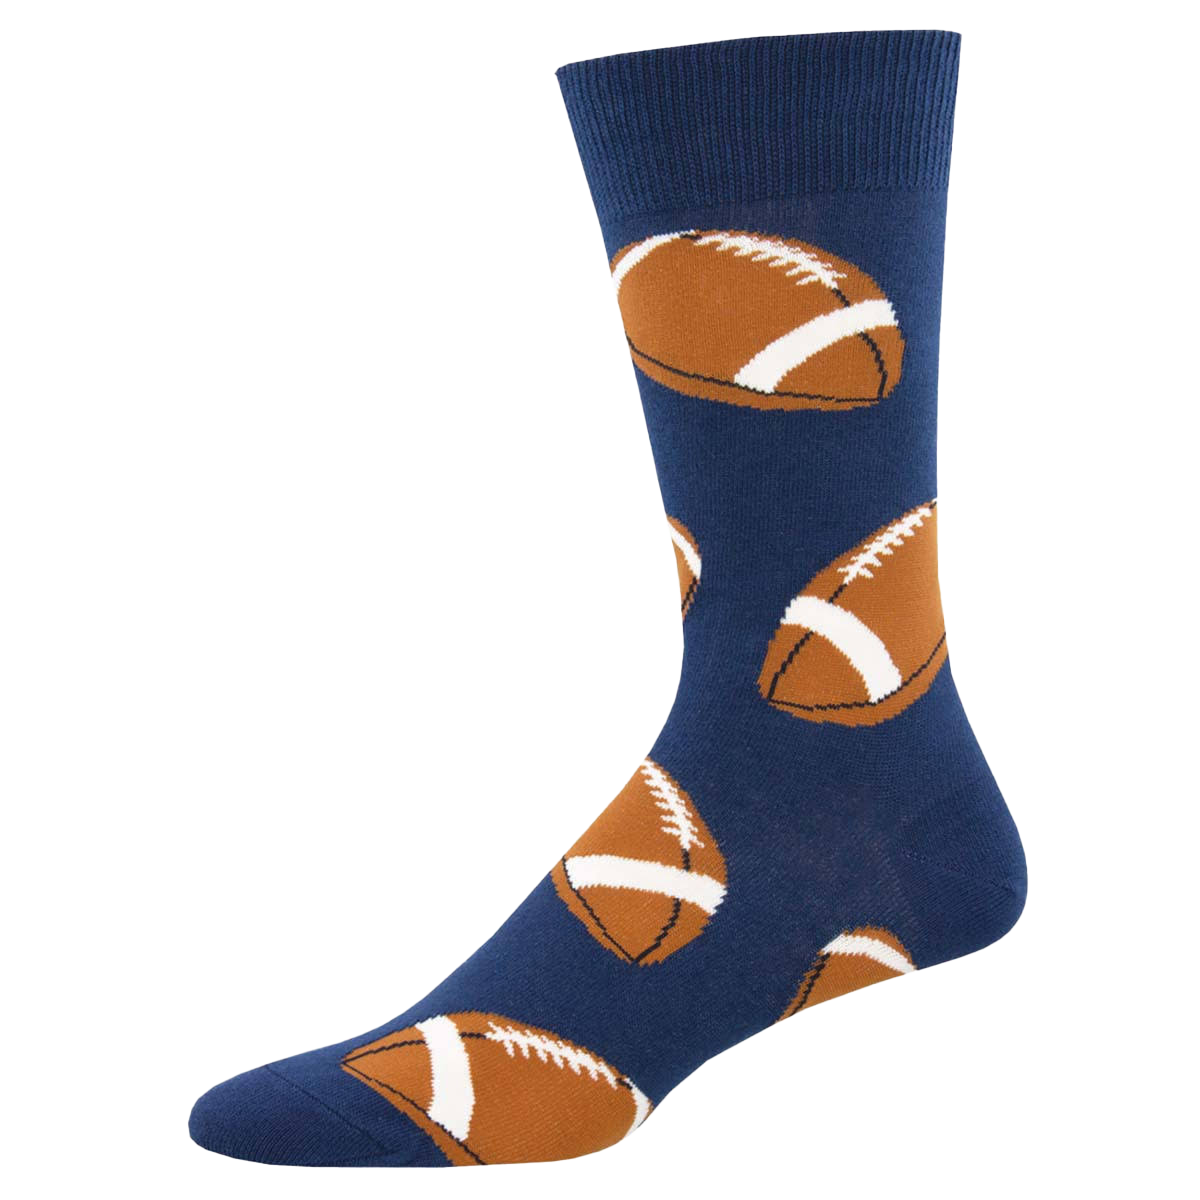 Pigskin Socks - Navy